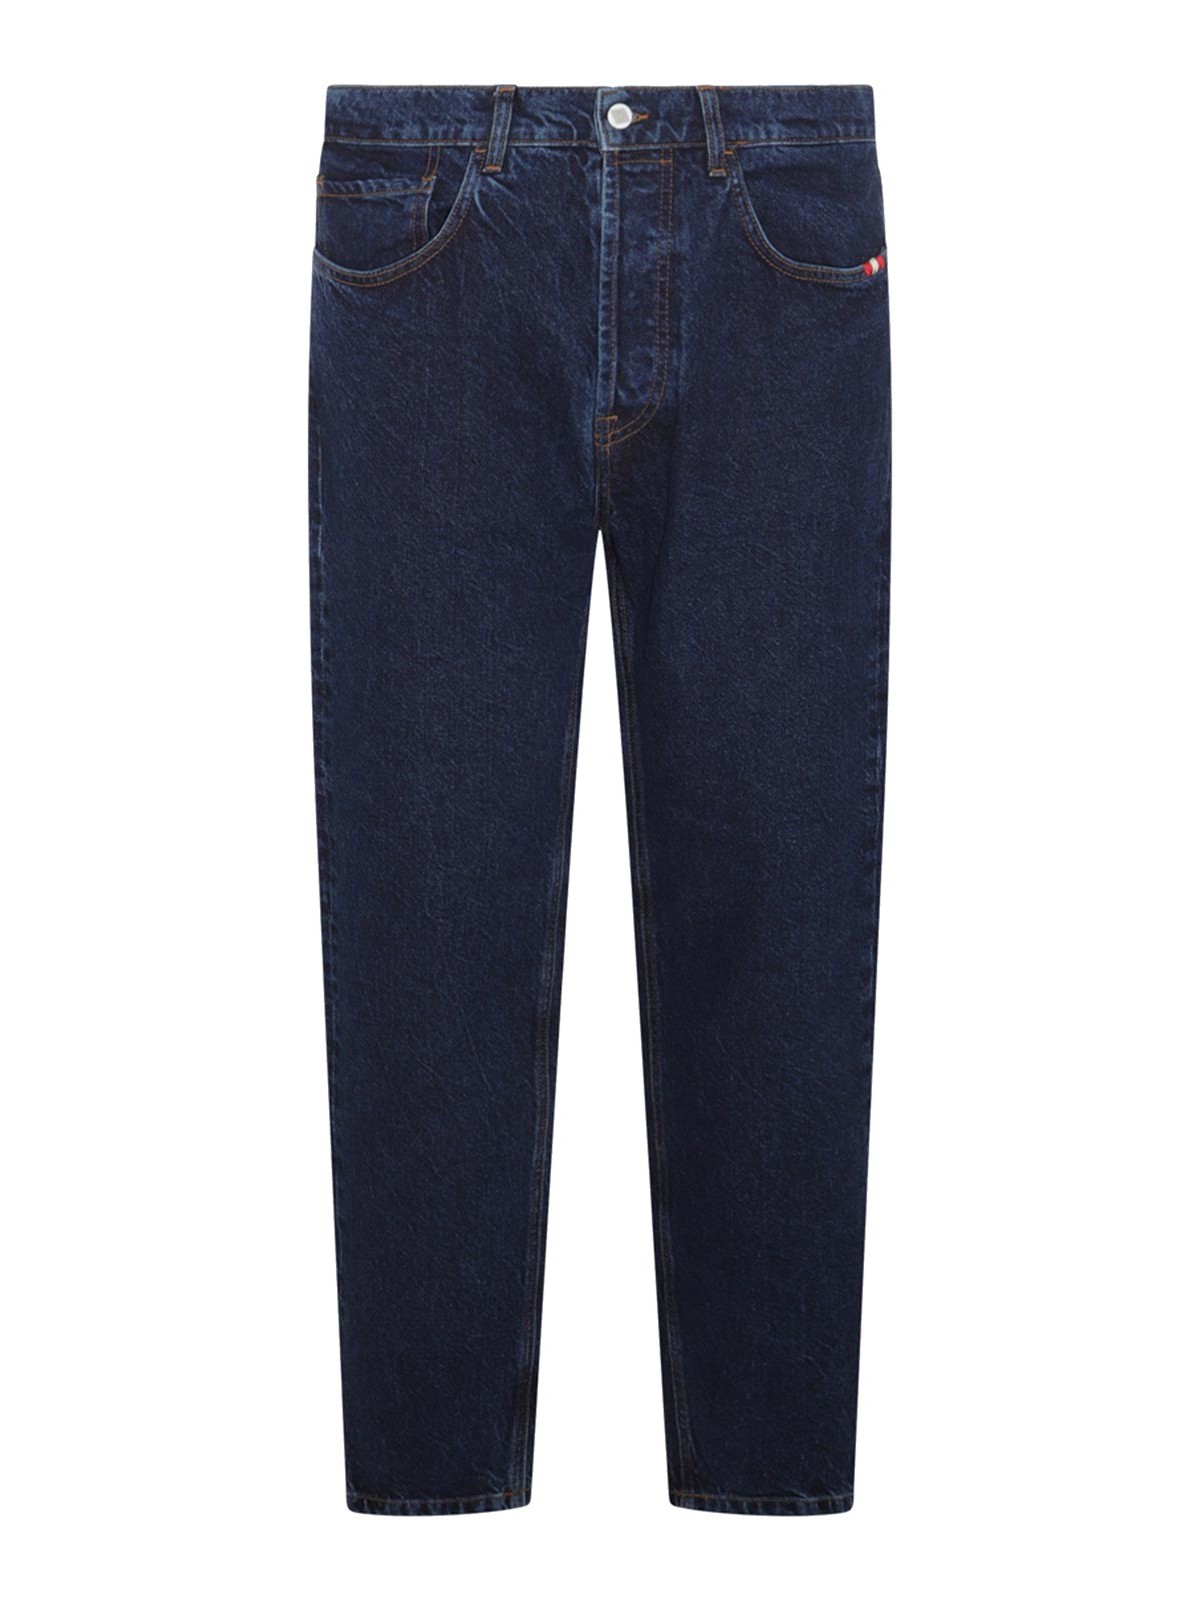 Amish Blue Denim Jeans